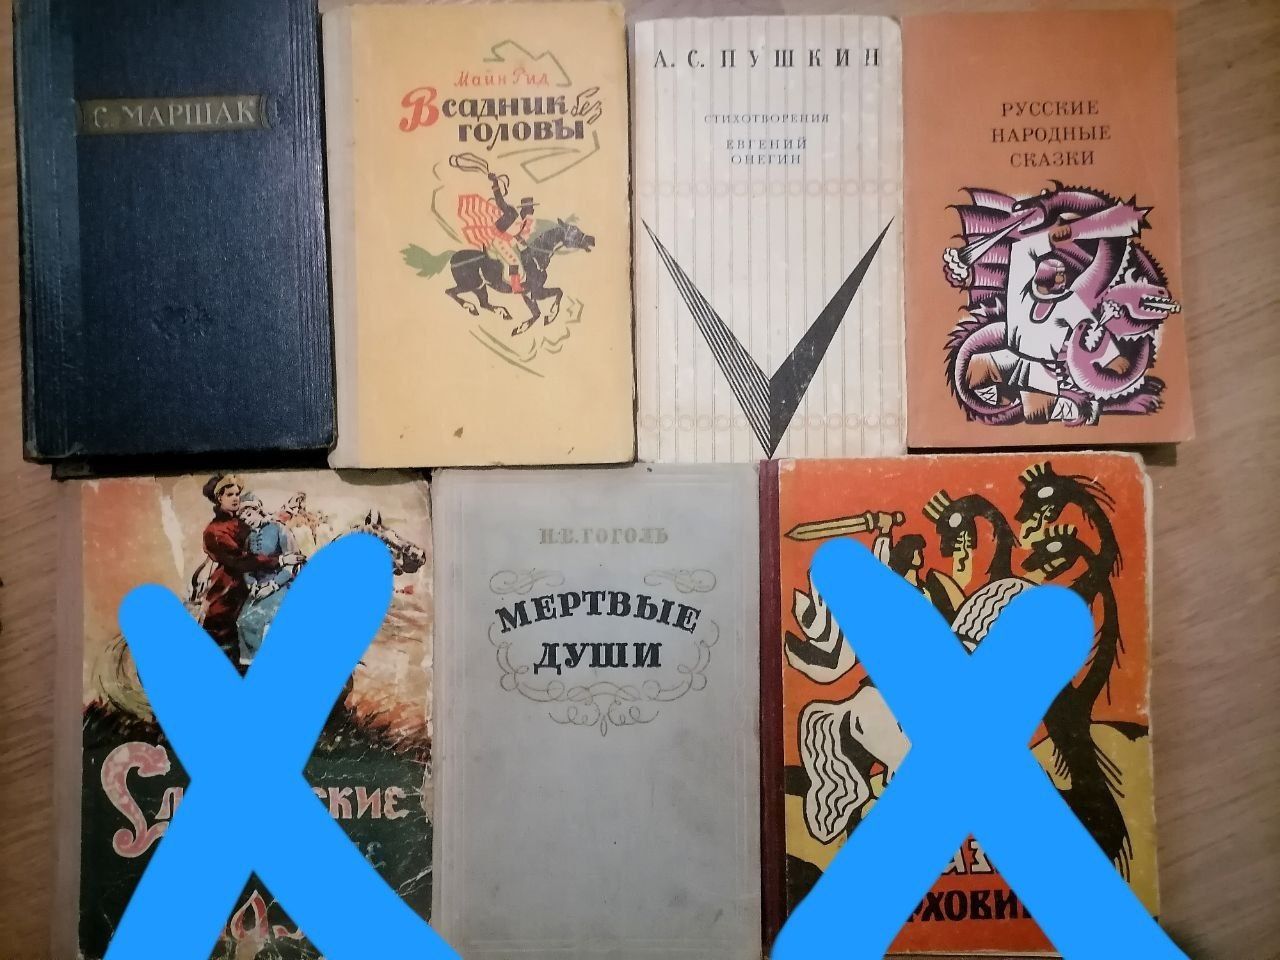 Книги по 20 грн за одиницю 
С. Маршак книга 2, 1955, тв.о
М. Рид "Всад